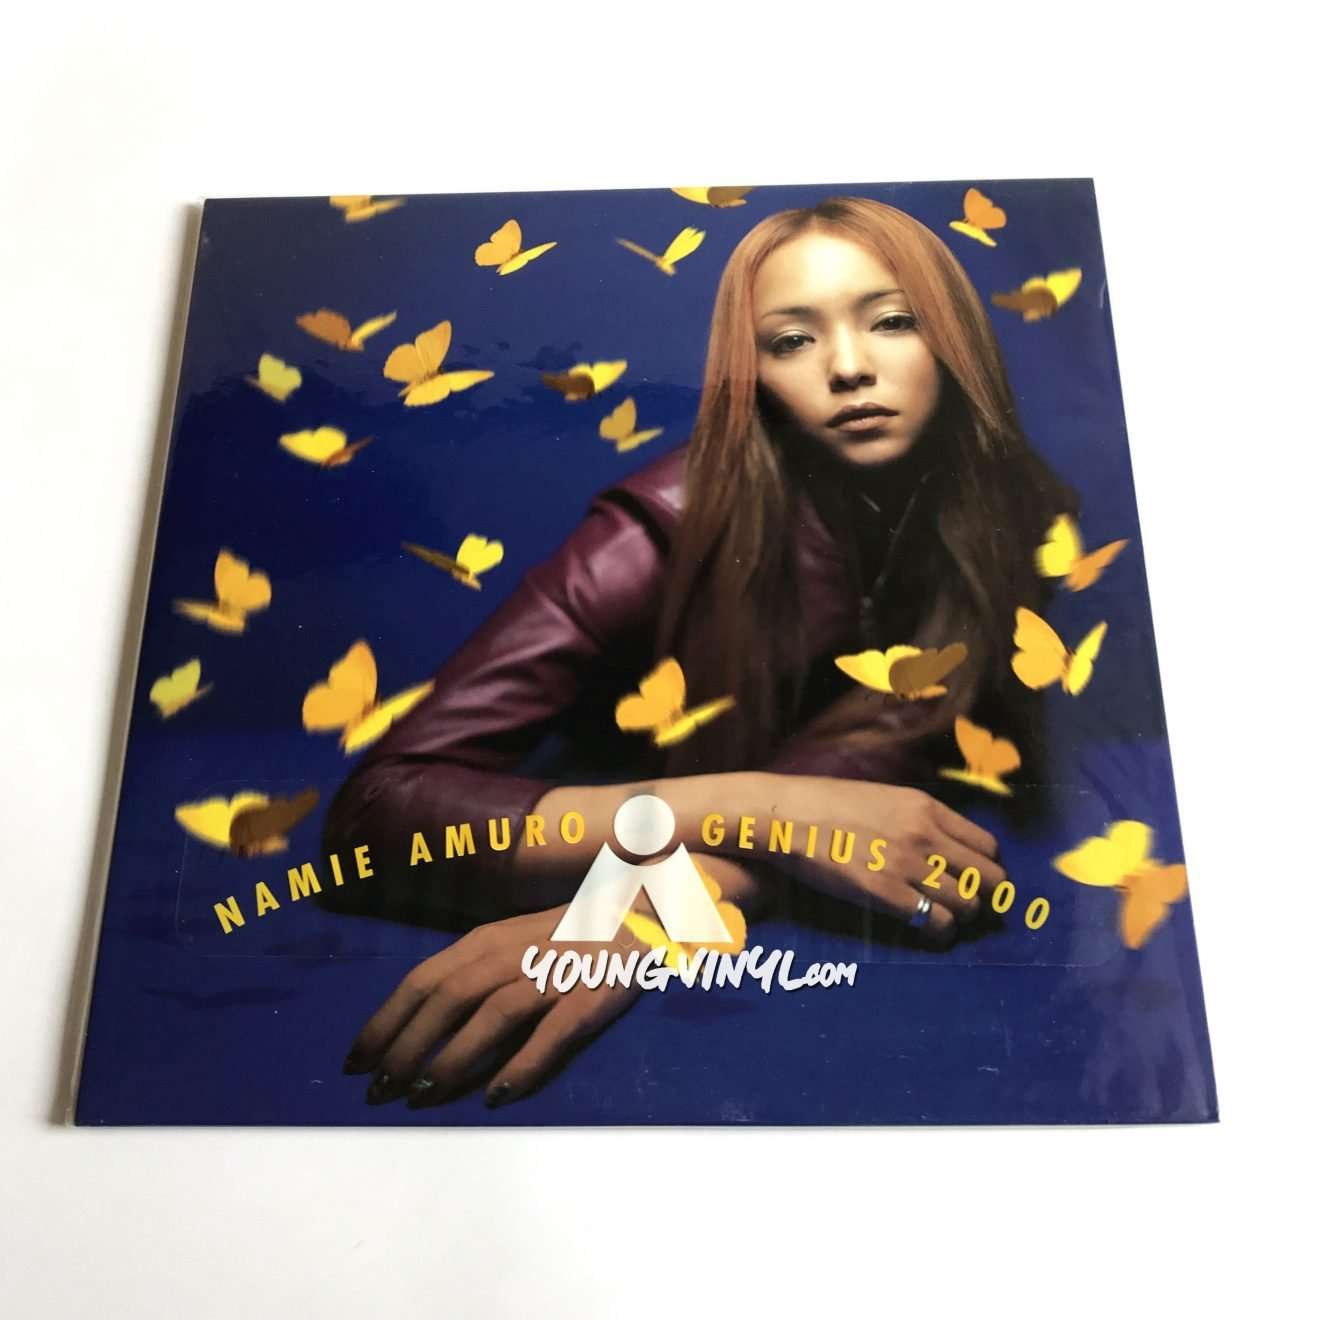 安室奈美恵 GENIUS 2000 アナログレコード2枚組 - 邦楽